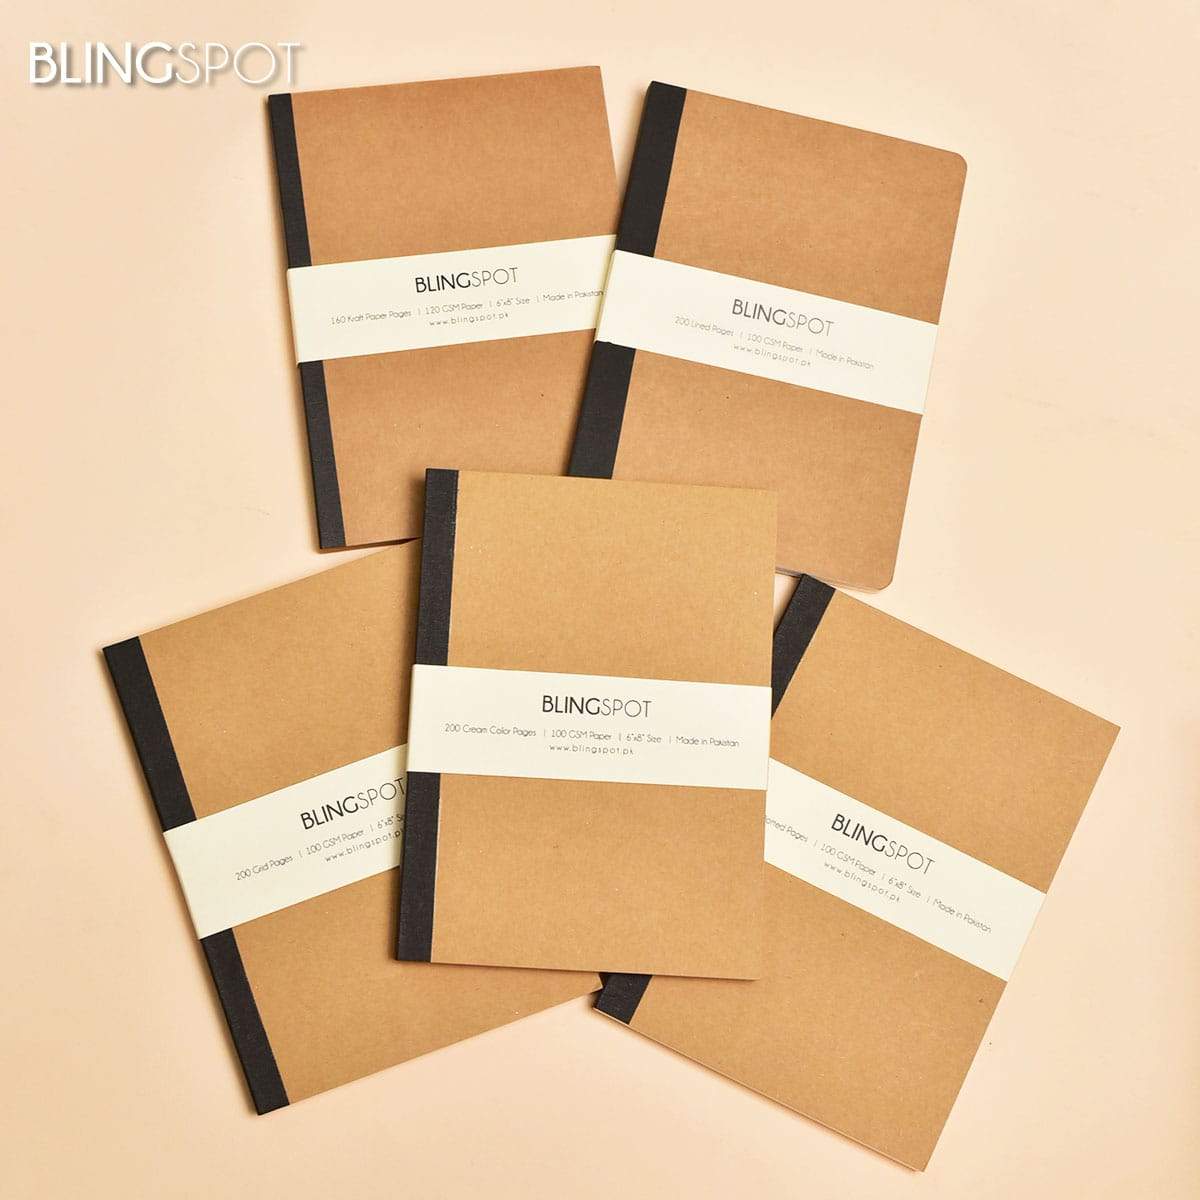 BLINGSPOT Kraft Series - Journal